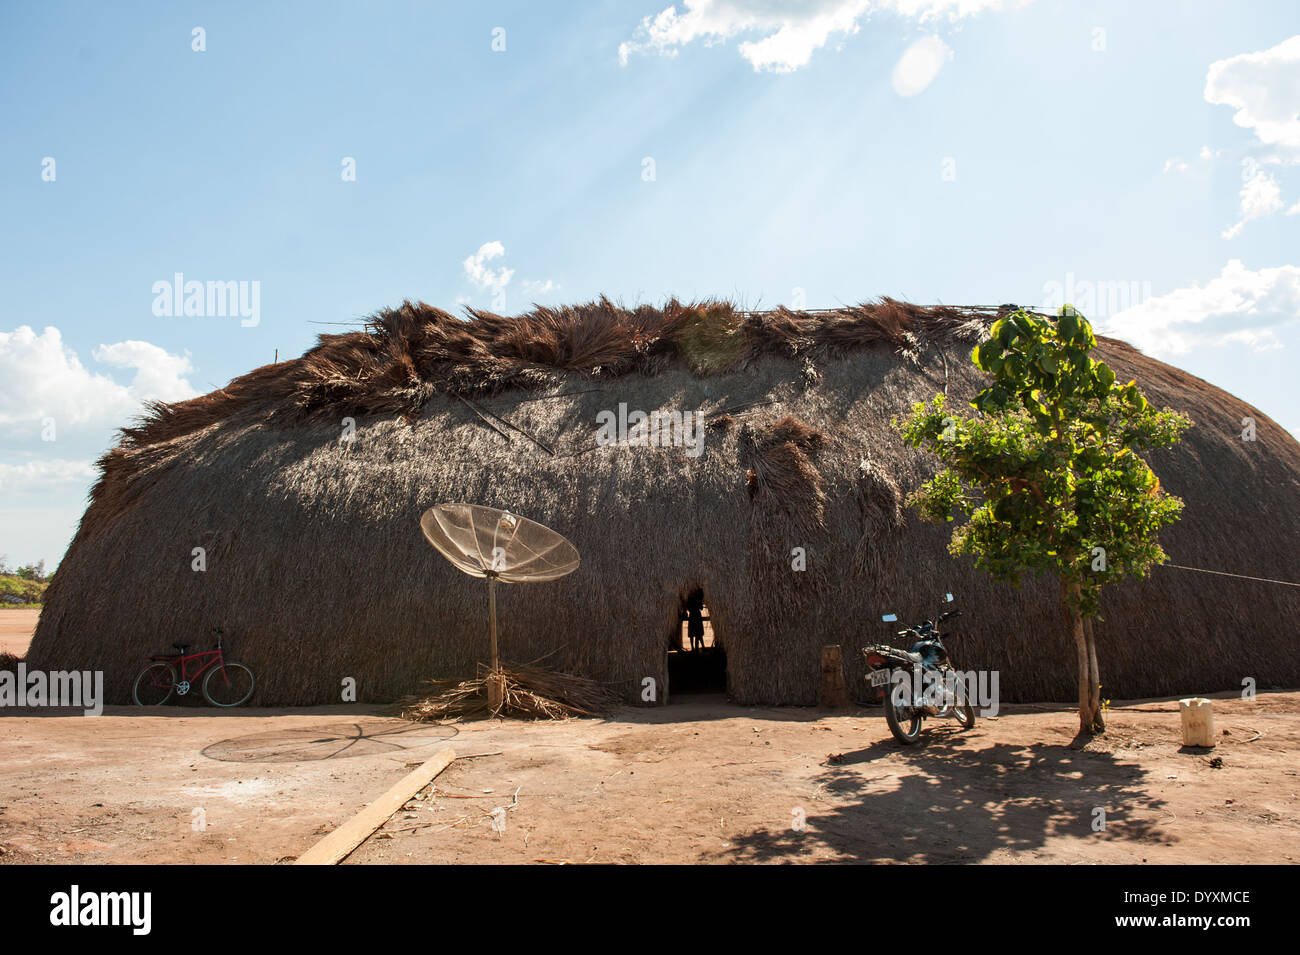 Xingu indigenen Park, Mato Grosso, Brasilien. Aldeia Matipu. Traditionelle Oca Einfamilienhaus, Fahrrad, Satelliten-Schüssel, Motorrad und Baum. Kombination von traditioneller Kultur und neuen Technologien. Stockfoto